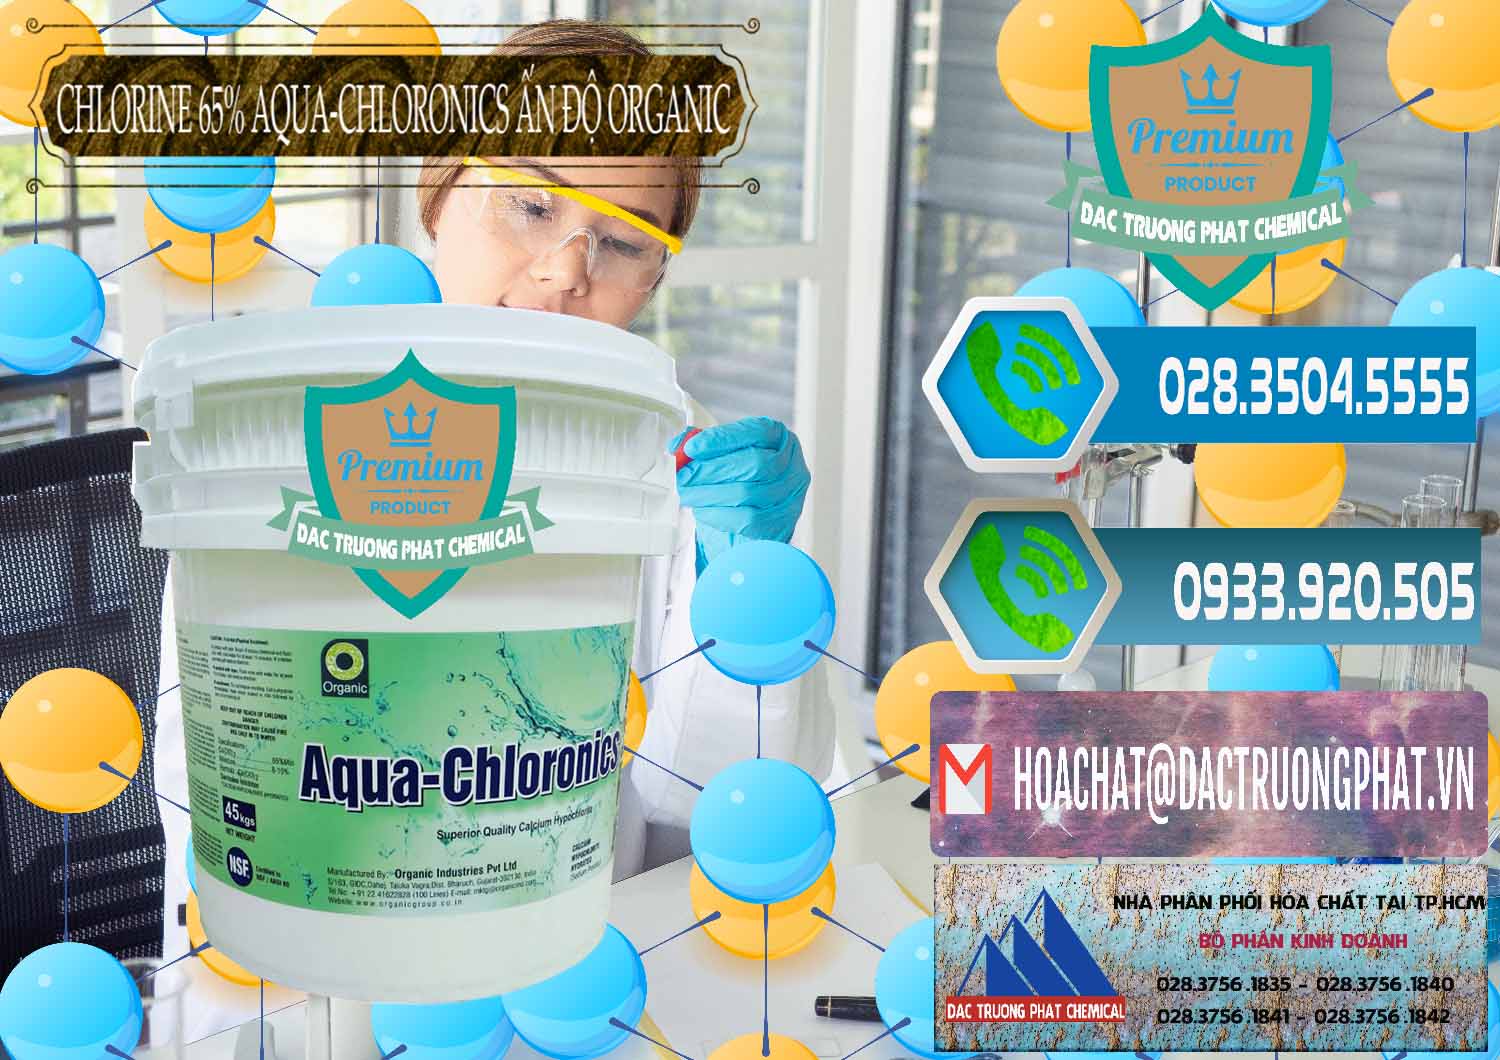 Đơn vị bán ( cung ứng ) Chlorine – Clorin 65% Aqua-Chloronics Ấn Độ Organic India - 0210 - Chuyên bán ( phân phối ) hóa chất tại TP.HCM - congtyhoachat.net